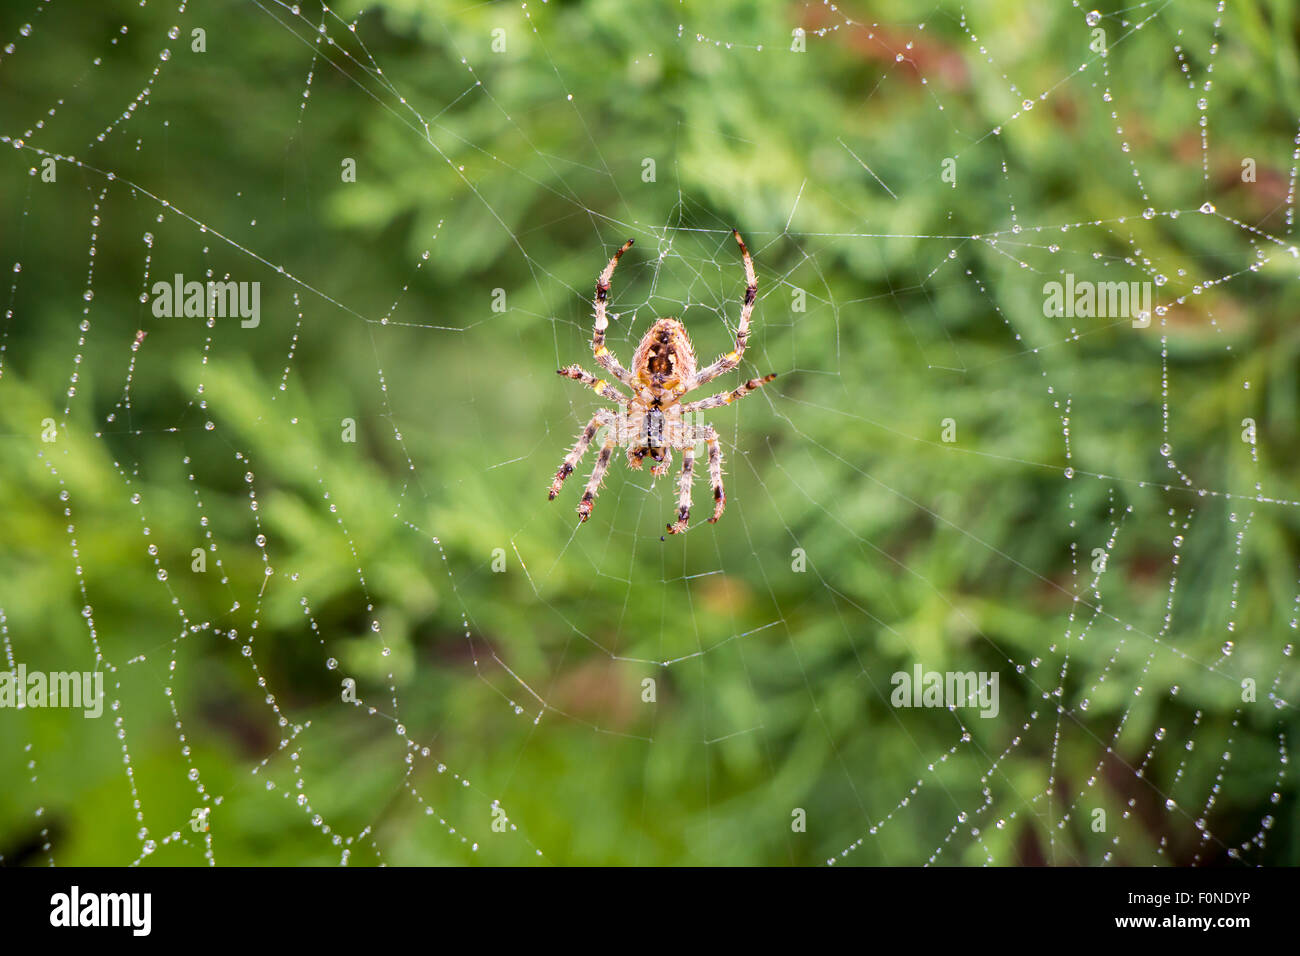 Garden spider (Argiope aurantia) in its net Stock Photo